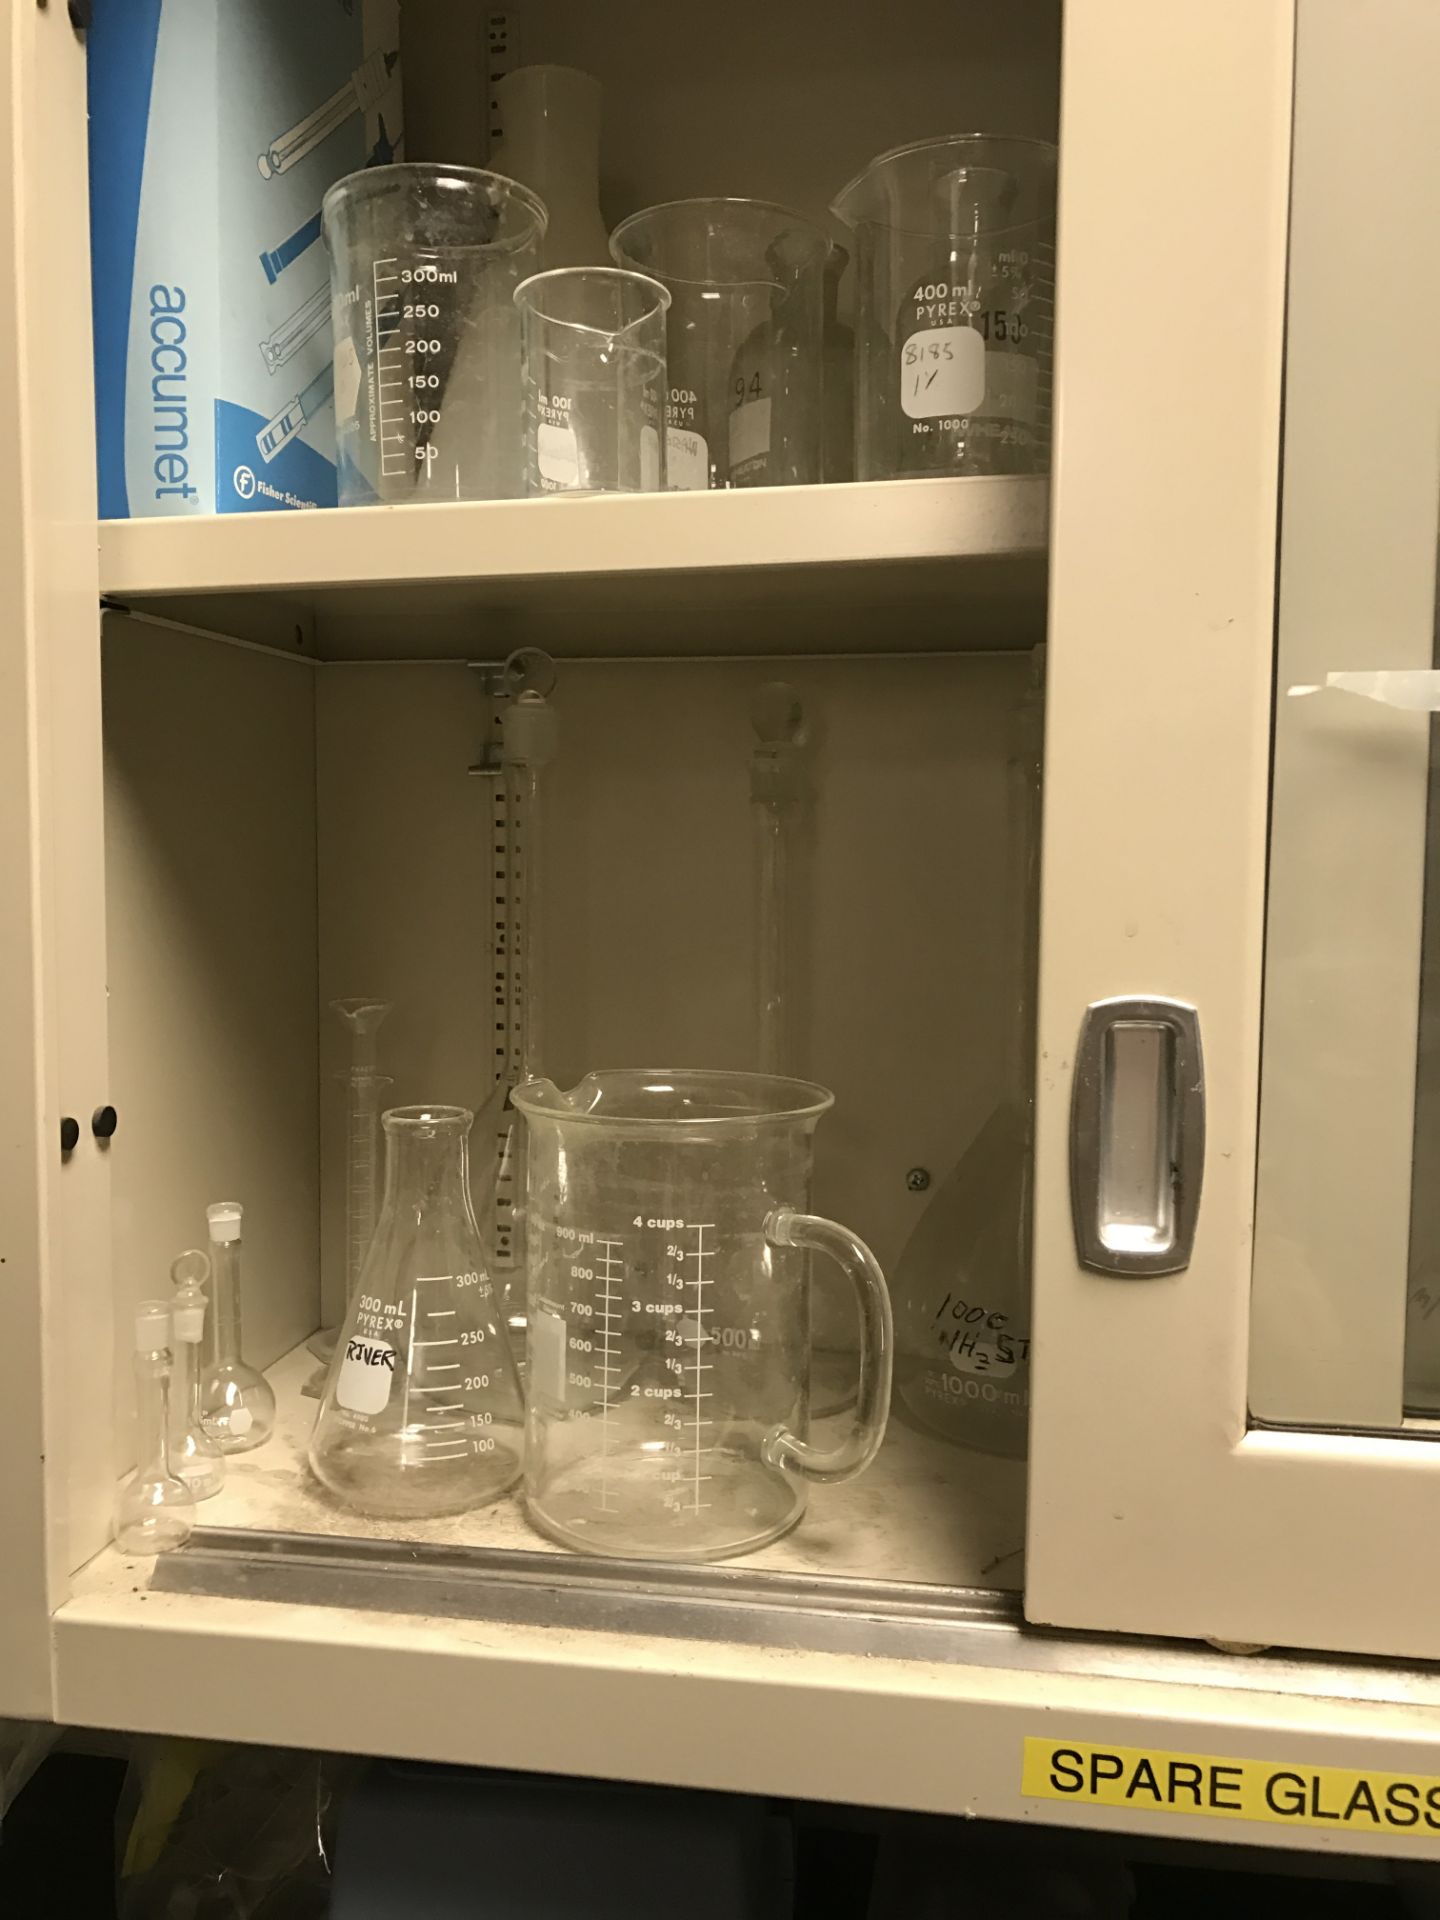 Laboratory Glassware, all glassware in lab